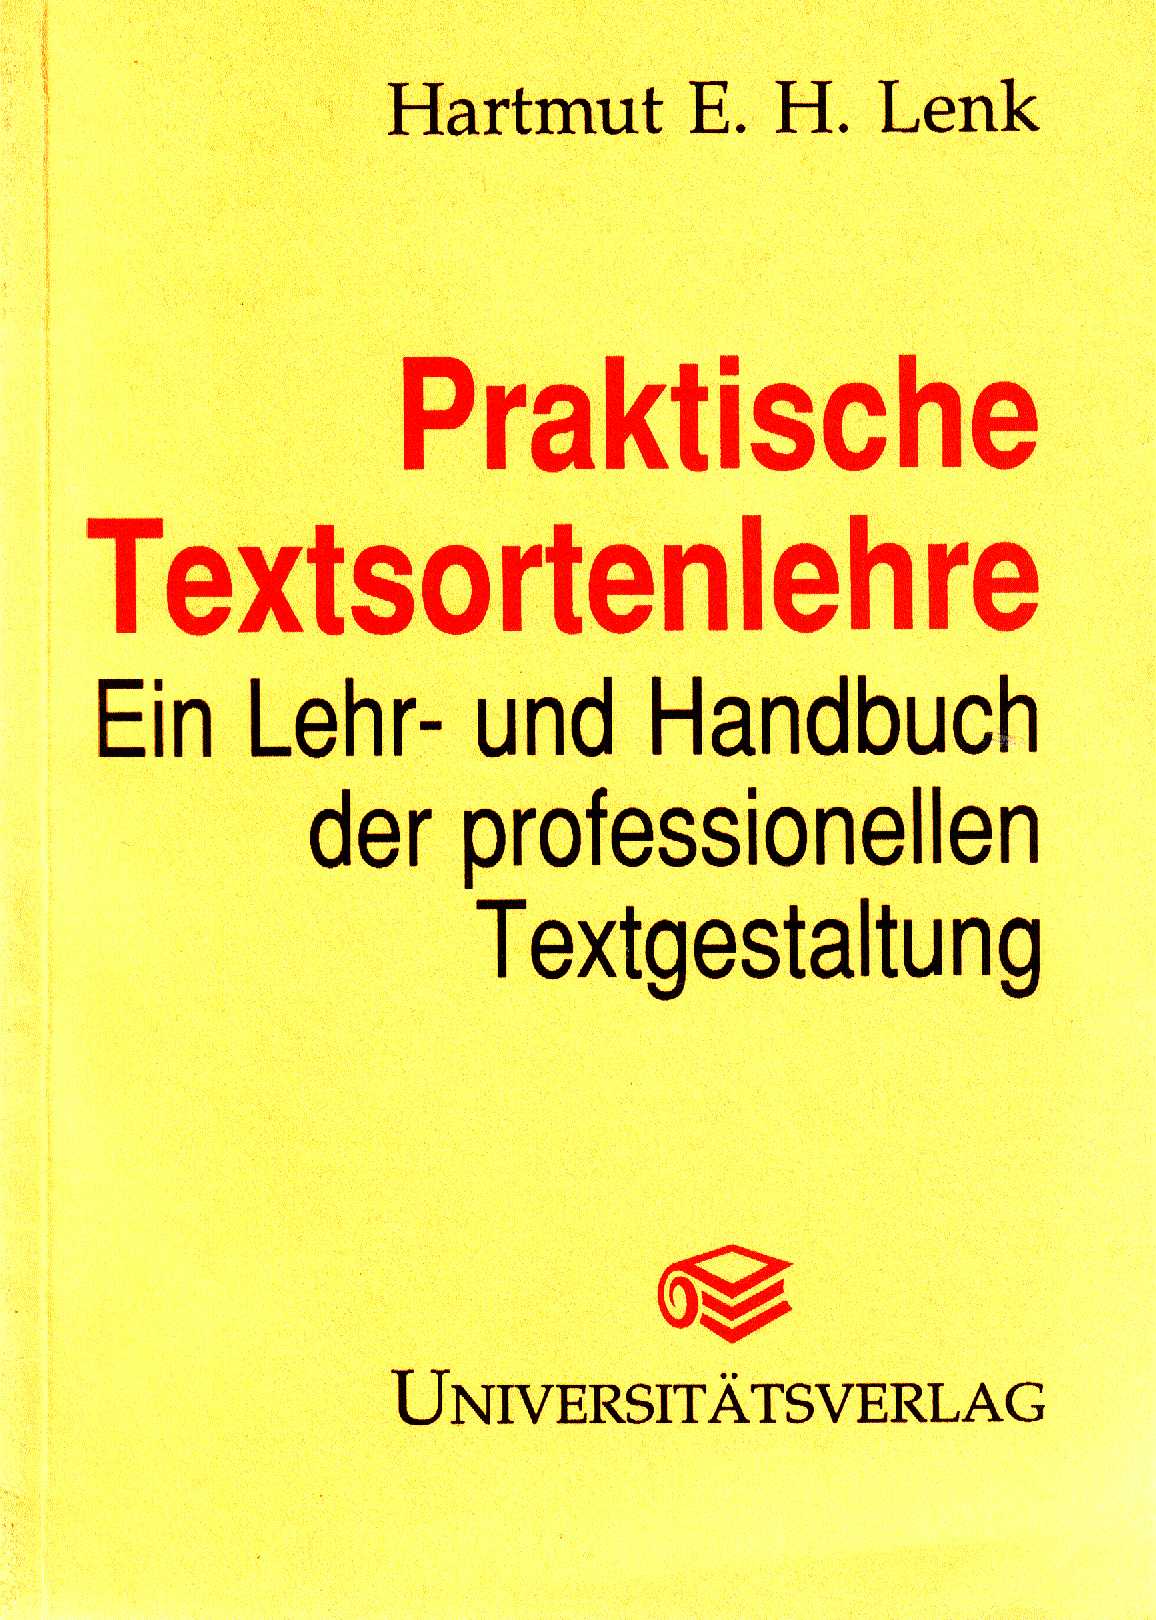 Praktische Textsortenlehre (Cover)